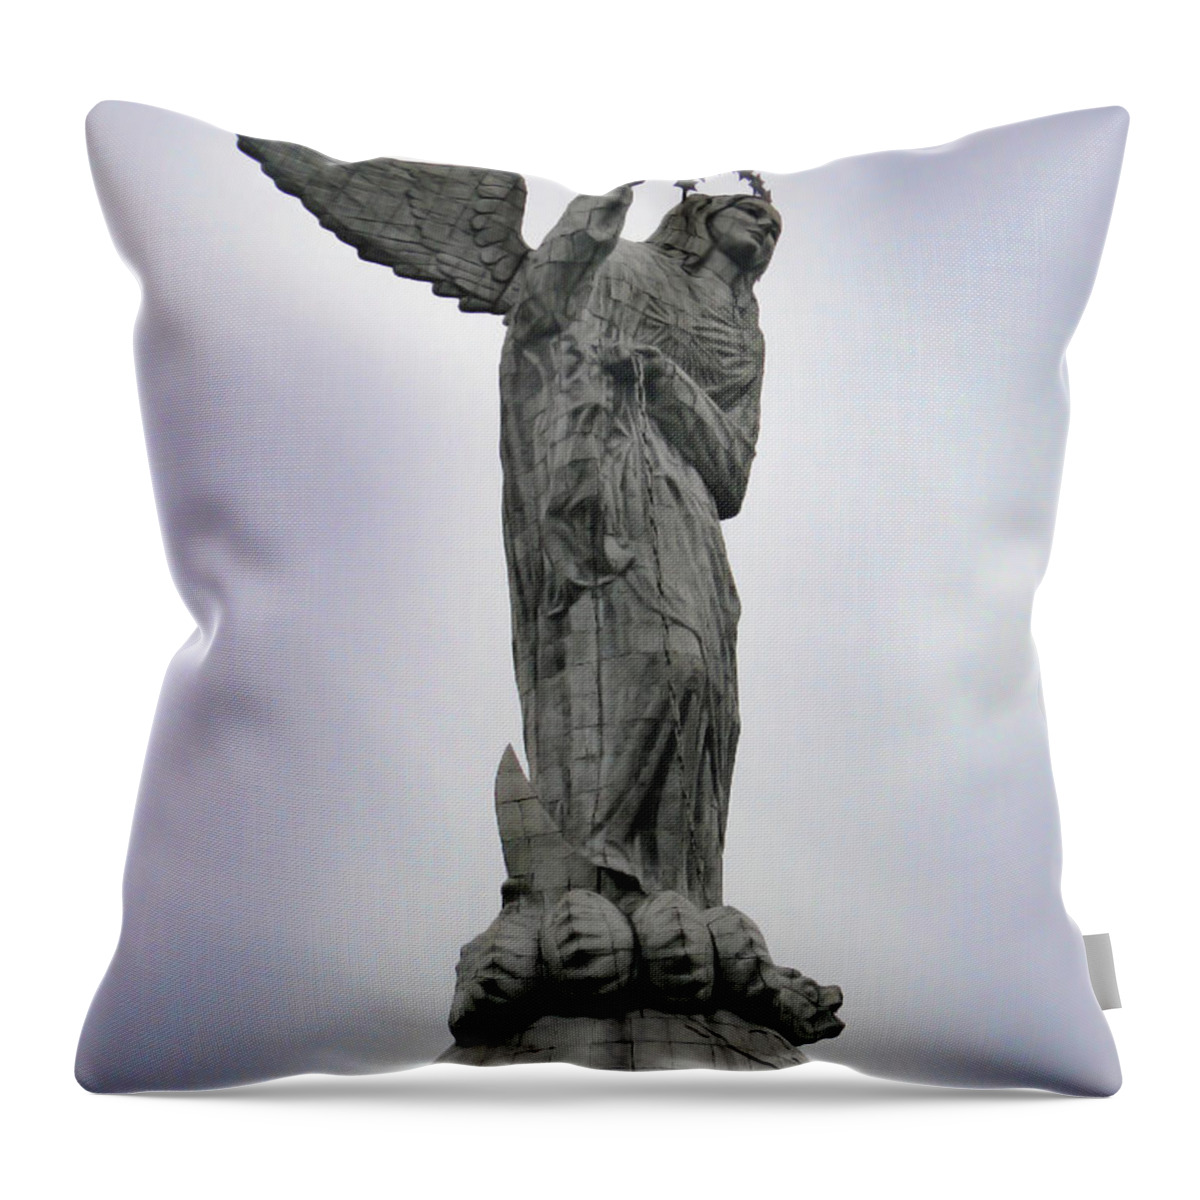 Virgen Throw Pillow featuring the photograph Virgen De El Panecillo - Quito Ecuador by Al Bourassa